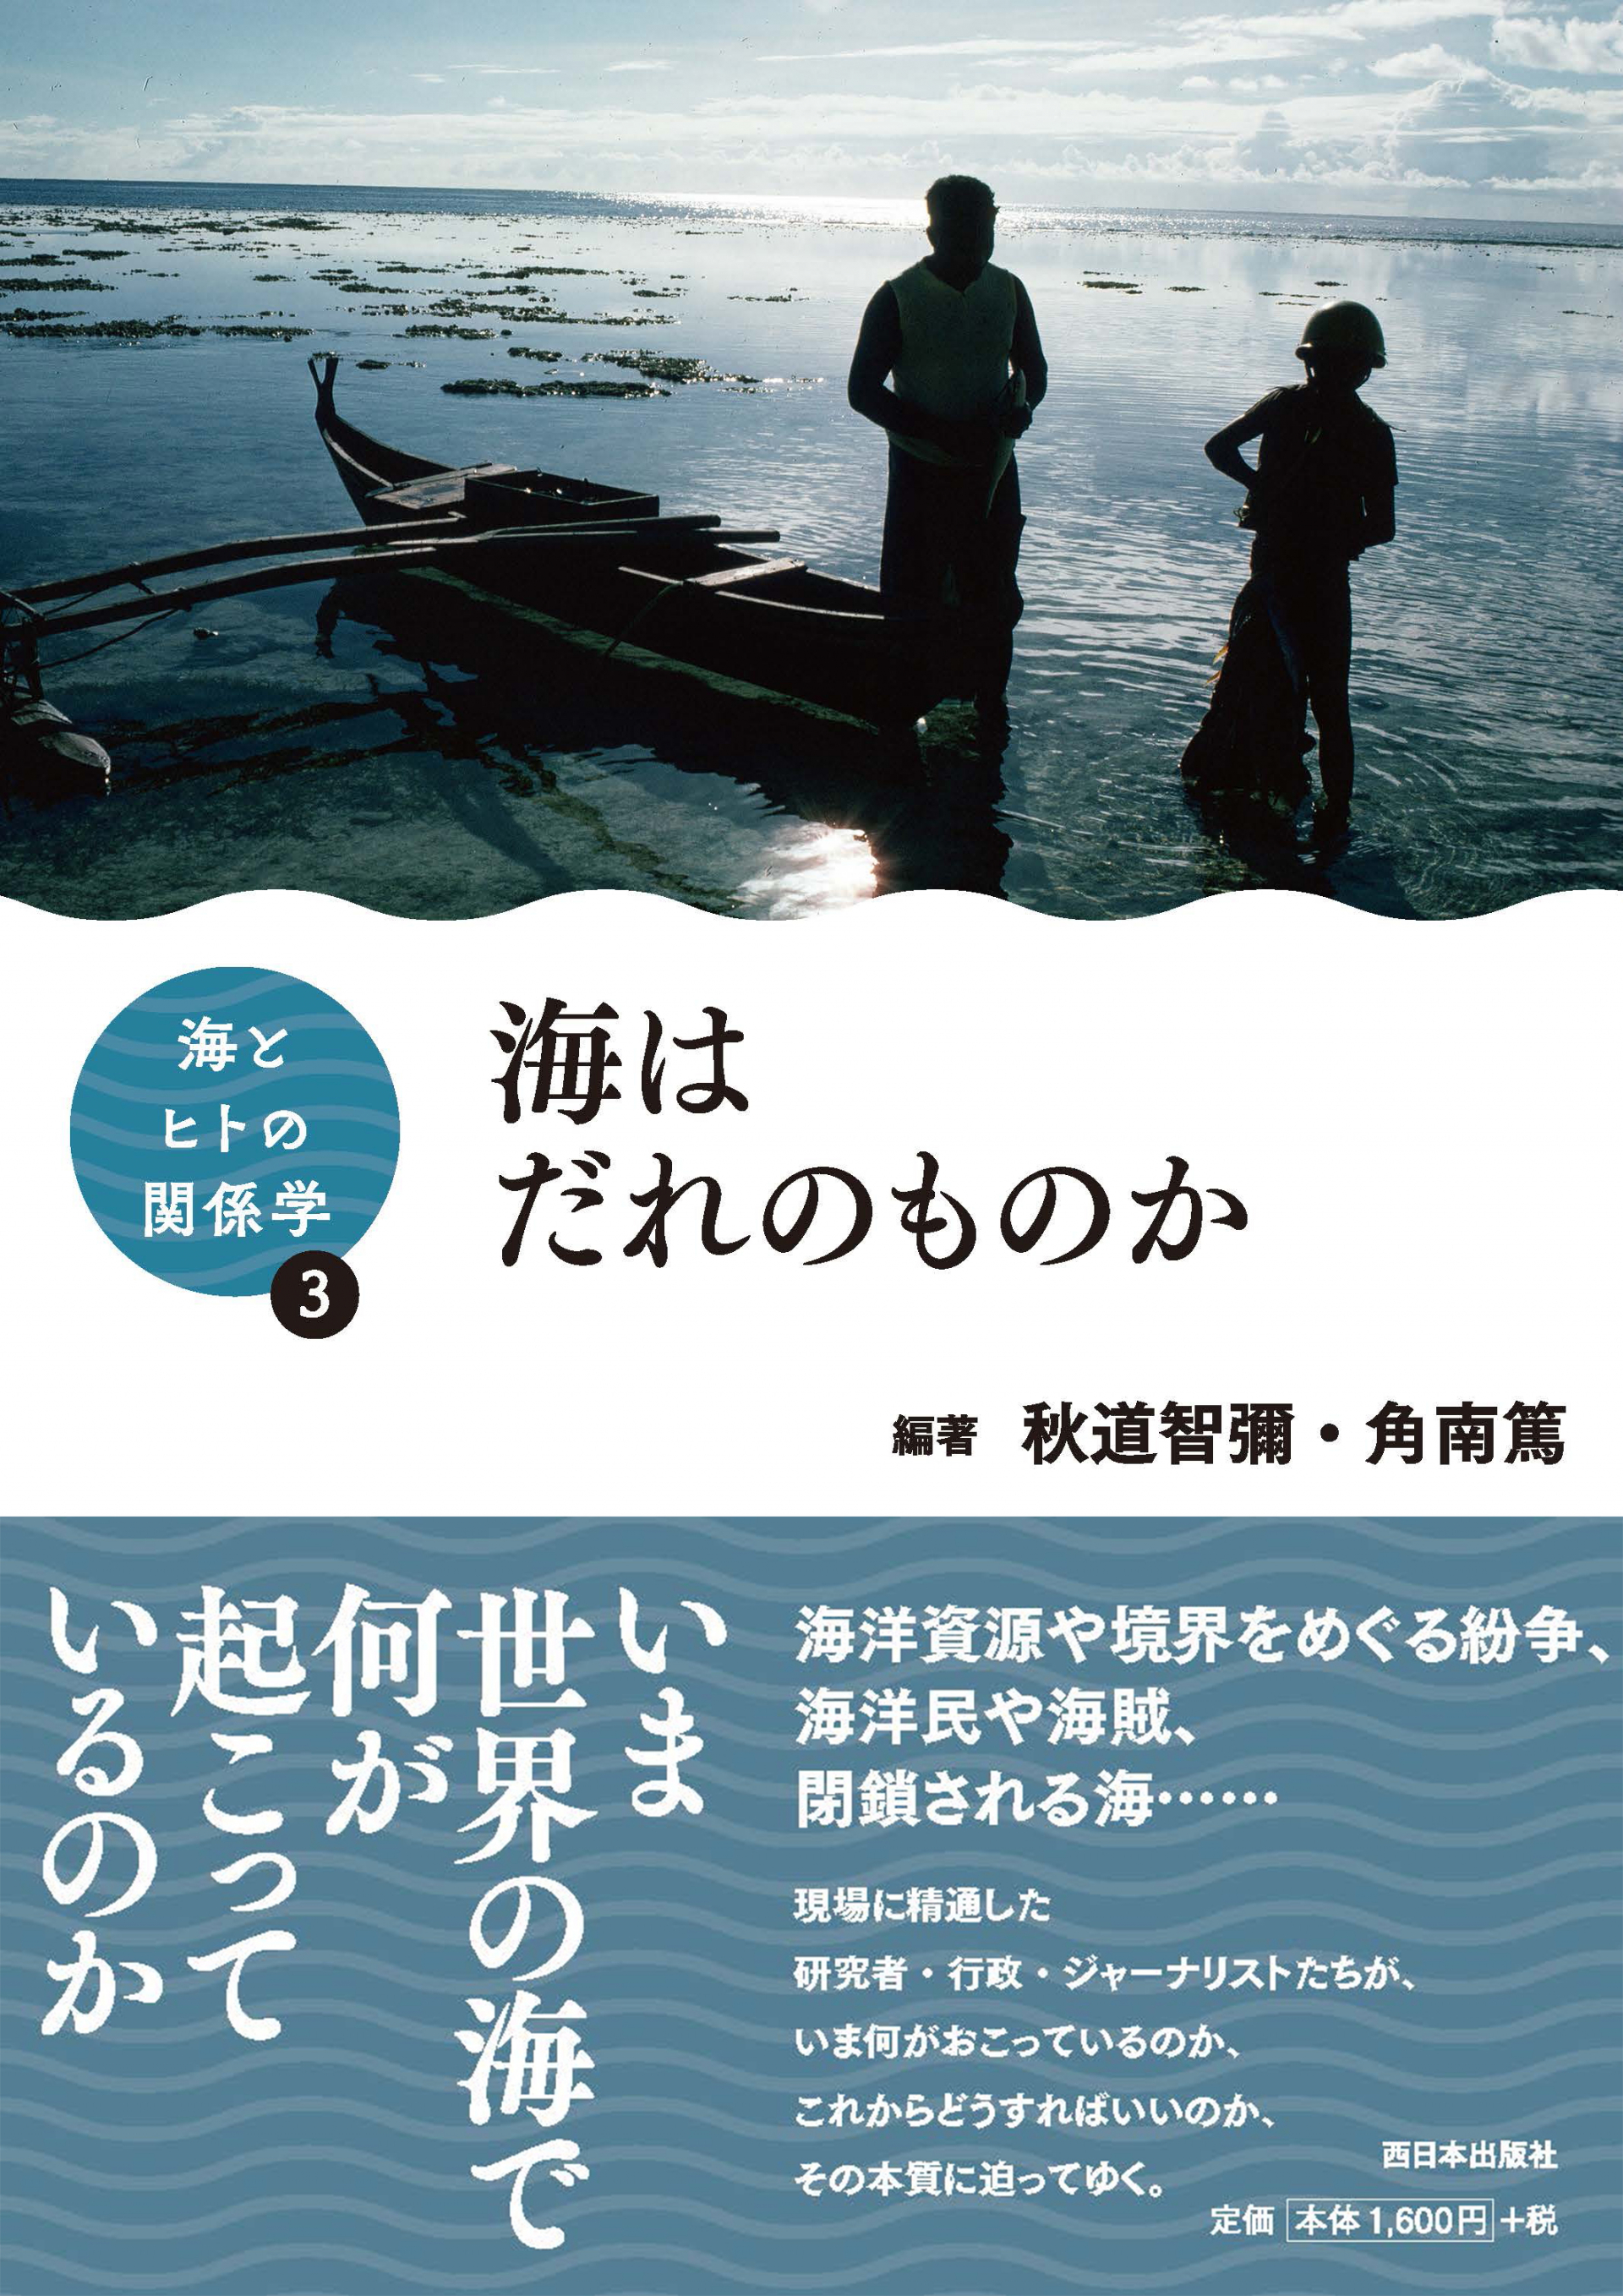 書籍「海とヒトの関係学」シリーズ 第3巻「海はだれのものか」刊行のお知らせ